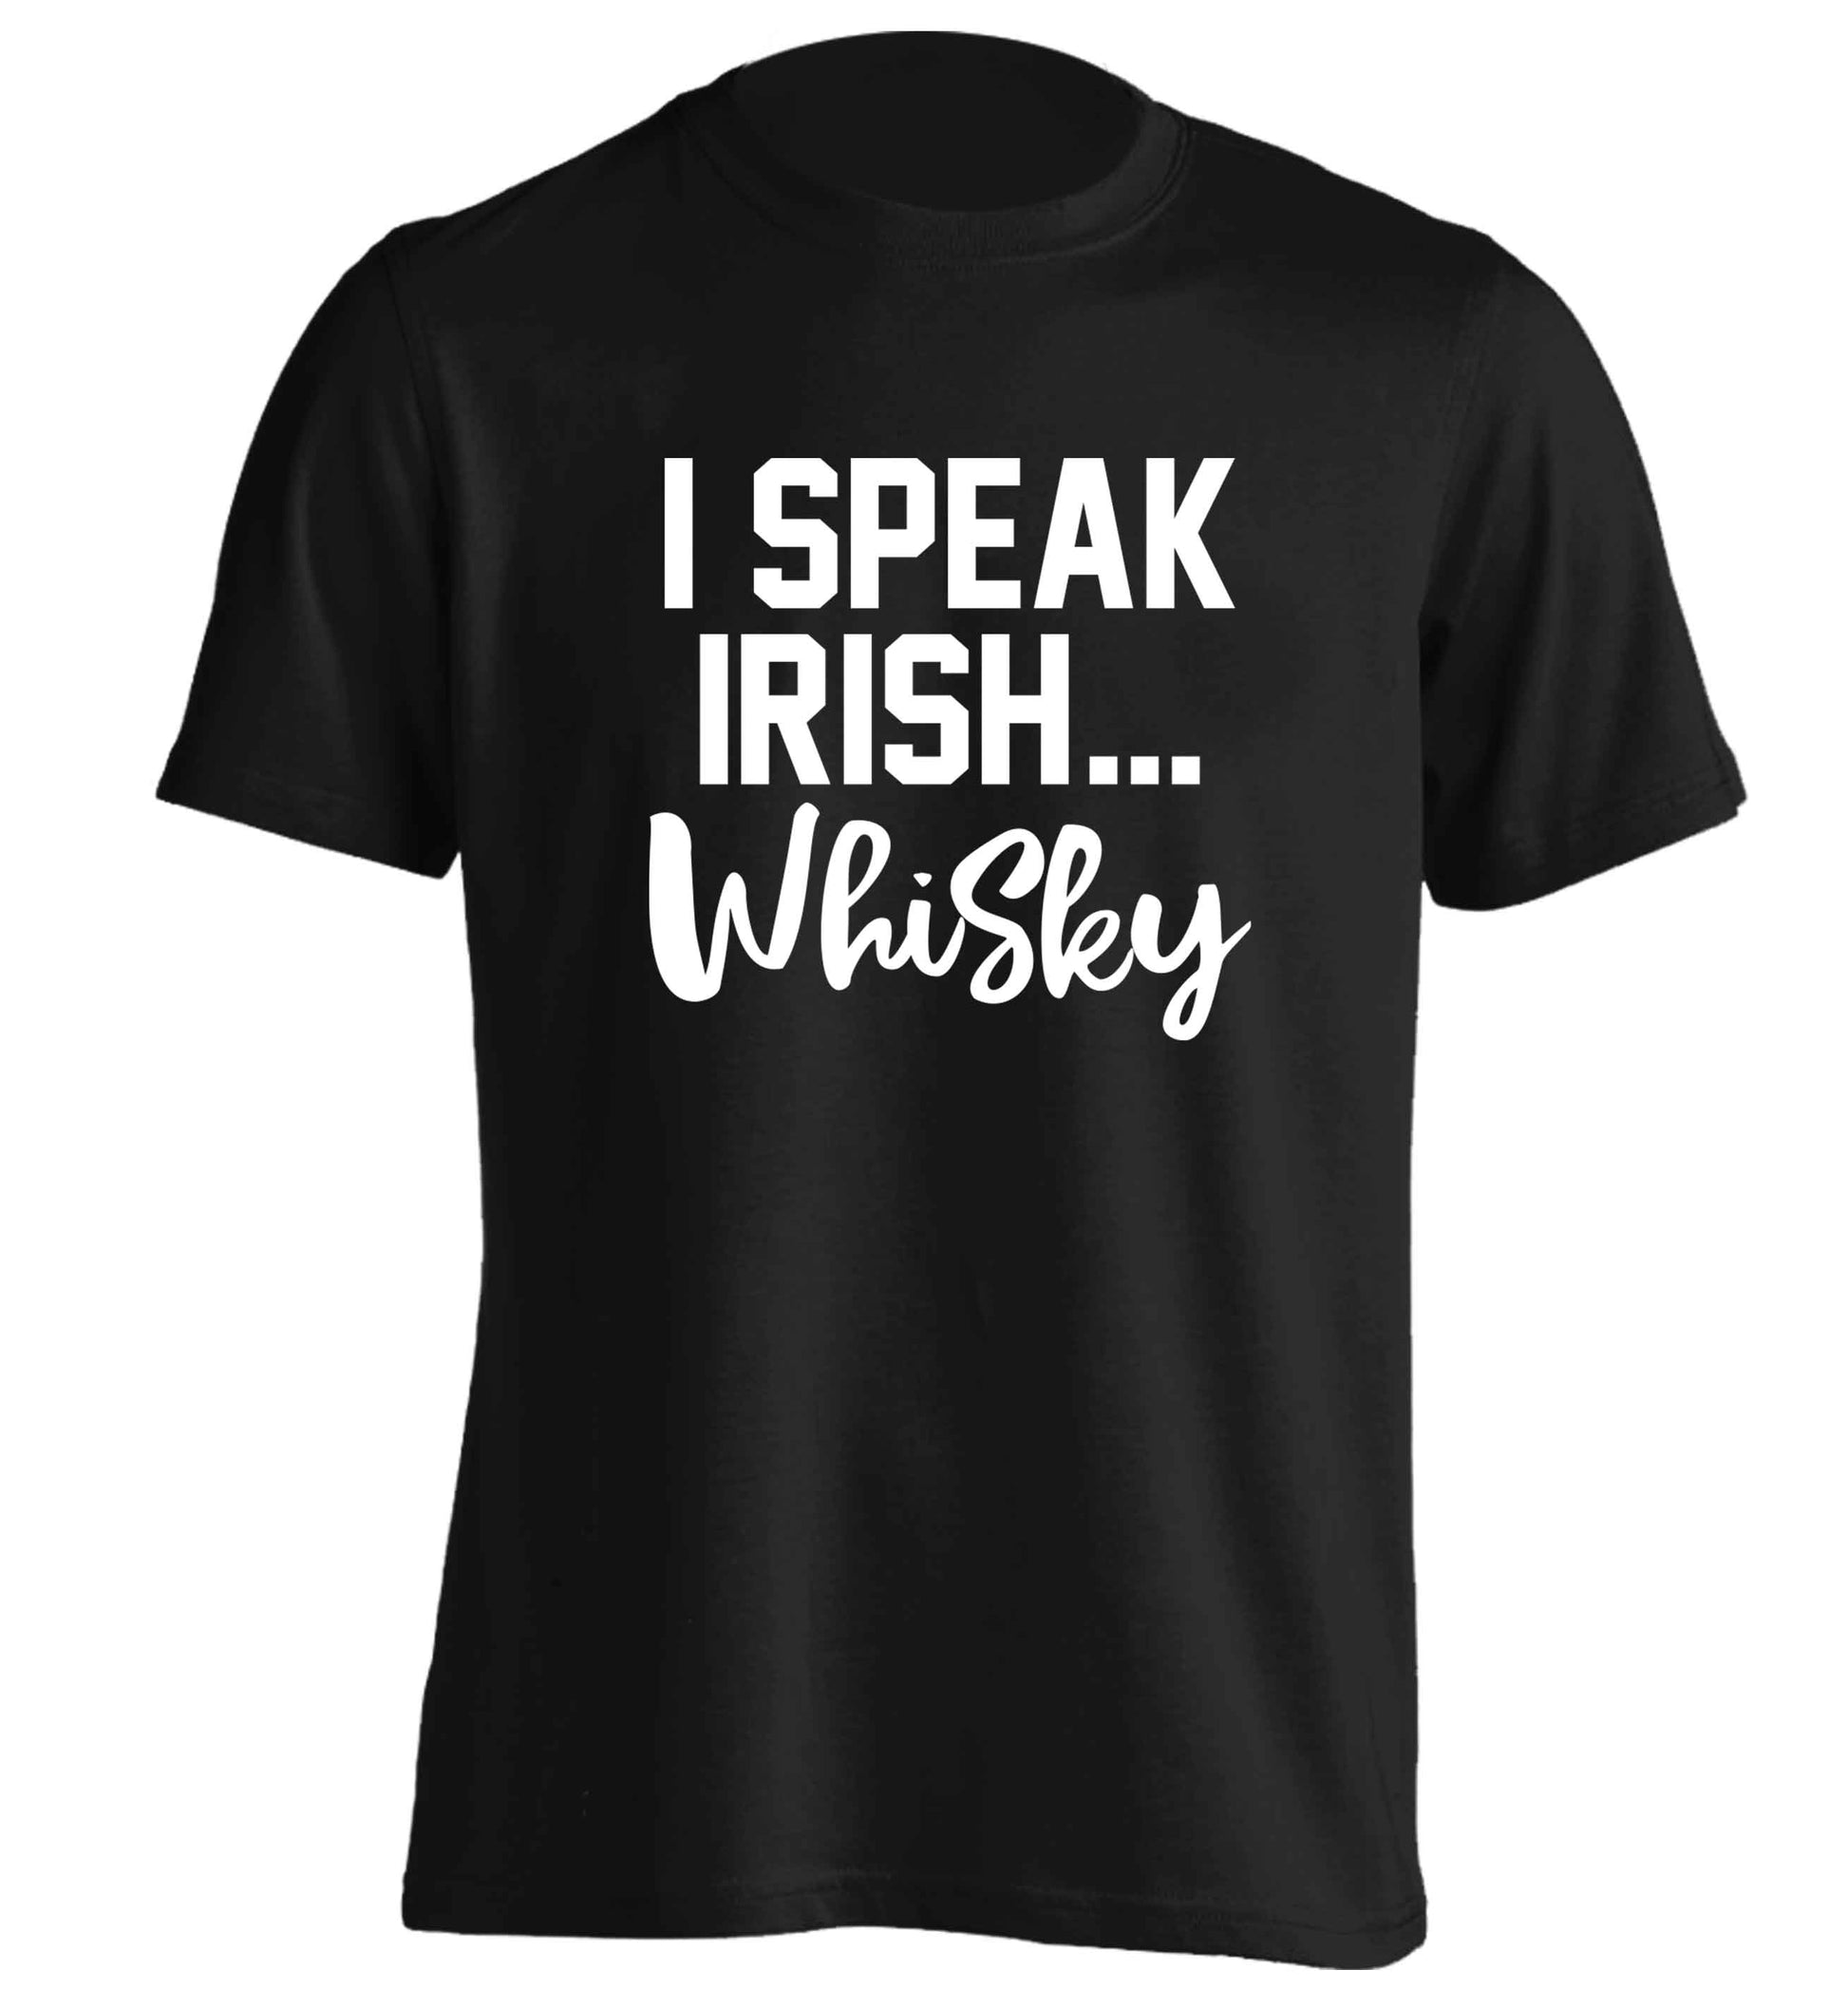 I speak Irish whisky adults unisex black Tshirt 2XL